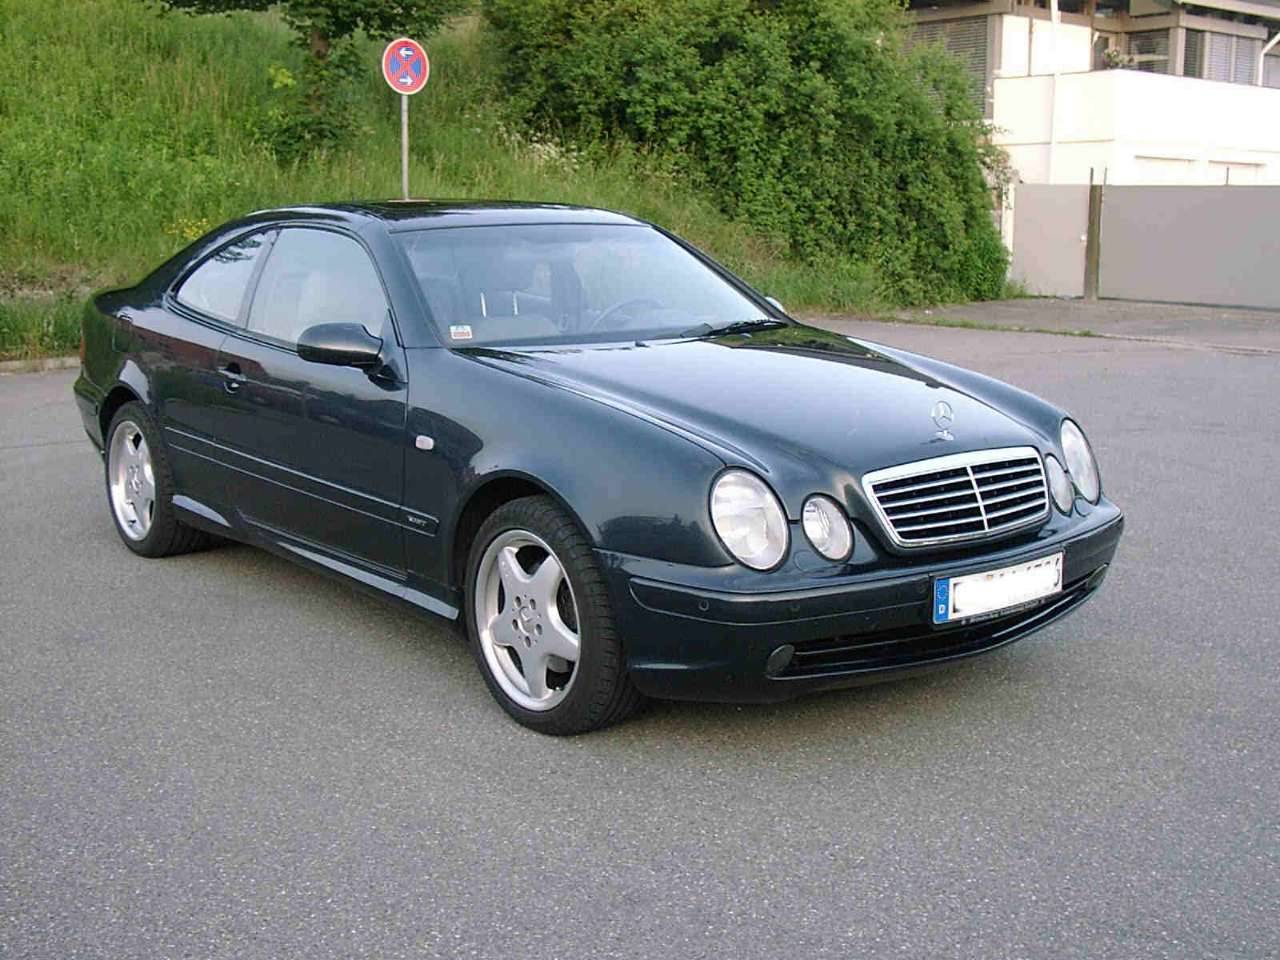 MercedesBenz CLK 320 (2000) für 15.950 EUR kaufen